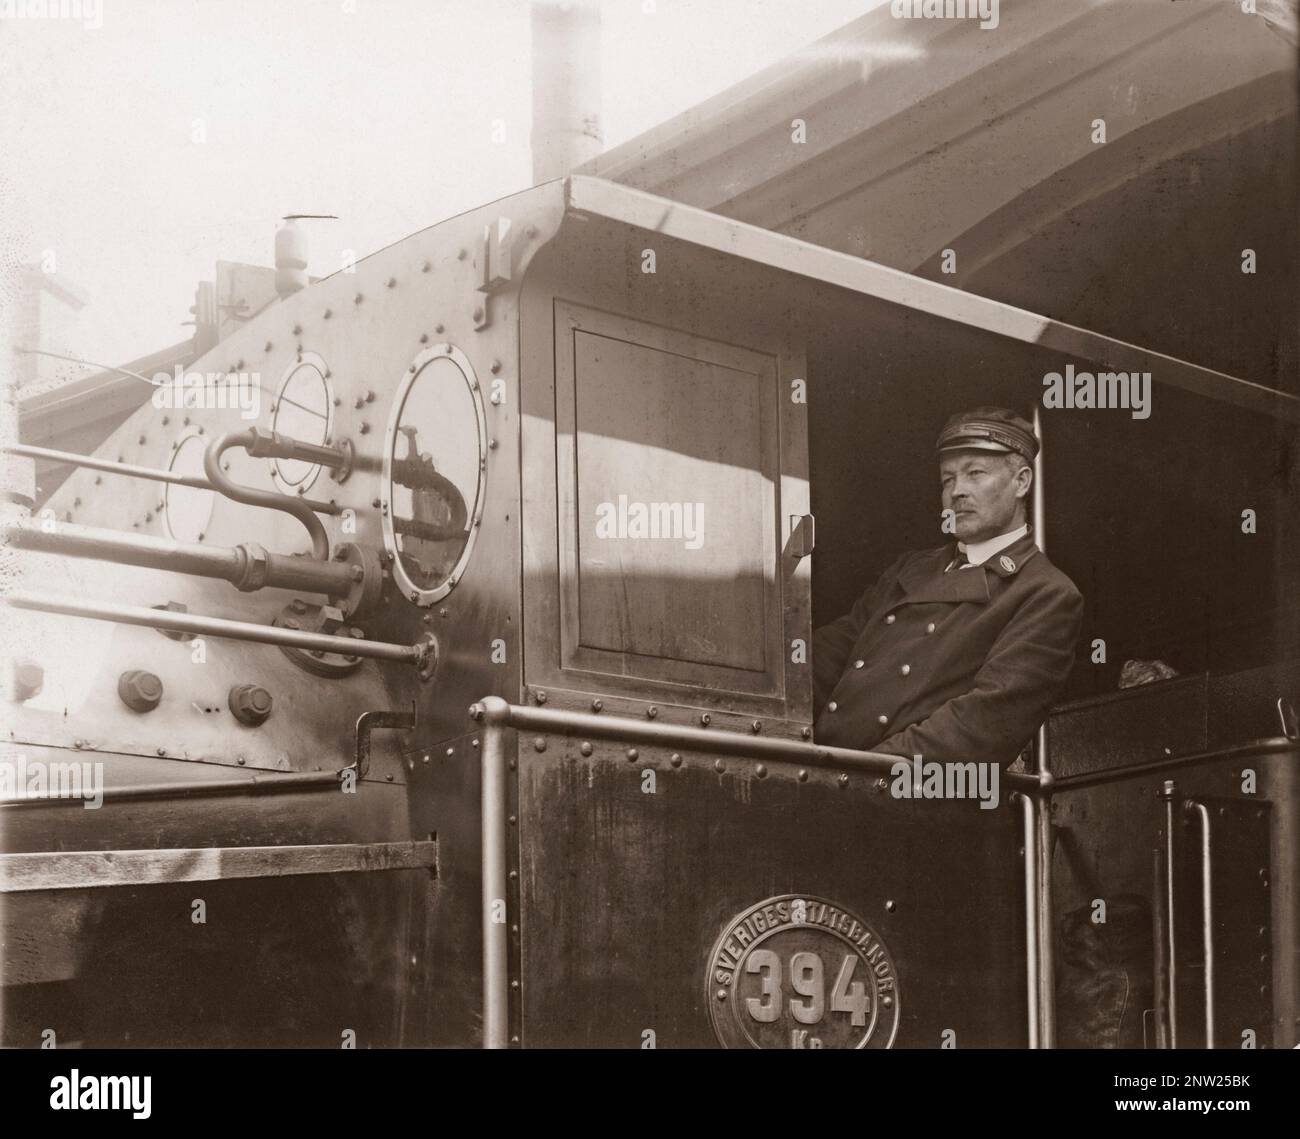 Dampflokomotivfahrer – ein Held. Der Zugführer Bobäck in seiner Lokomotive bildete sich ein Bild, weil er die 70 Zugpassagiere gerettet hat, nachdem er bemerkt hatte, dass die Schienen nicht weit vor ihm beschädigt waren und es geschafft hatte, den laufenden Zug zu stoppen, bevor er 30 Meter hätte fallen sollen. Der Vorfall ereignete sich am 14. juni 1913. Stockfoto